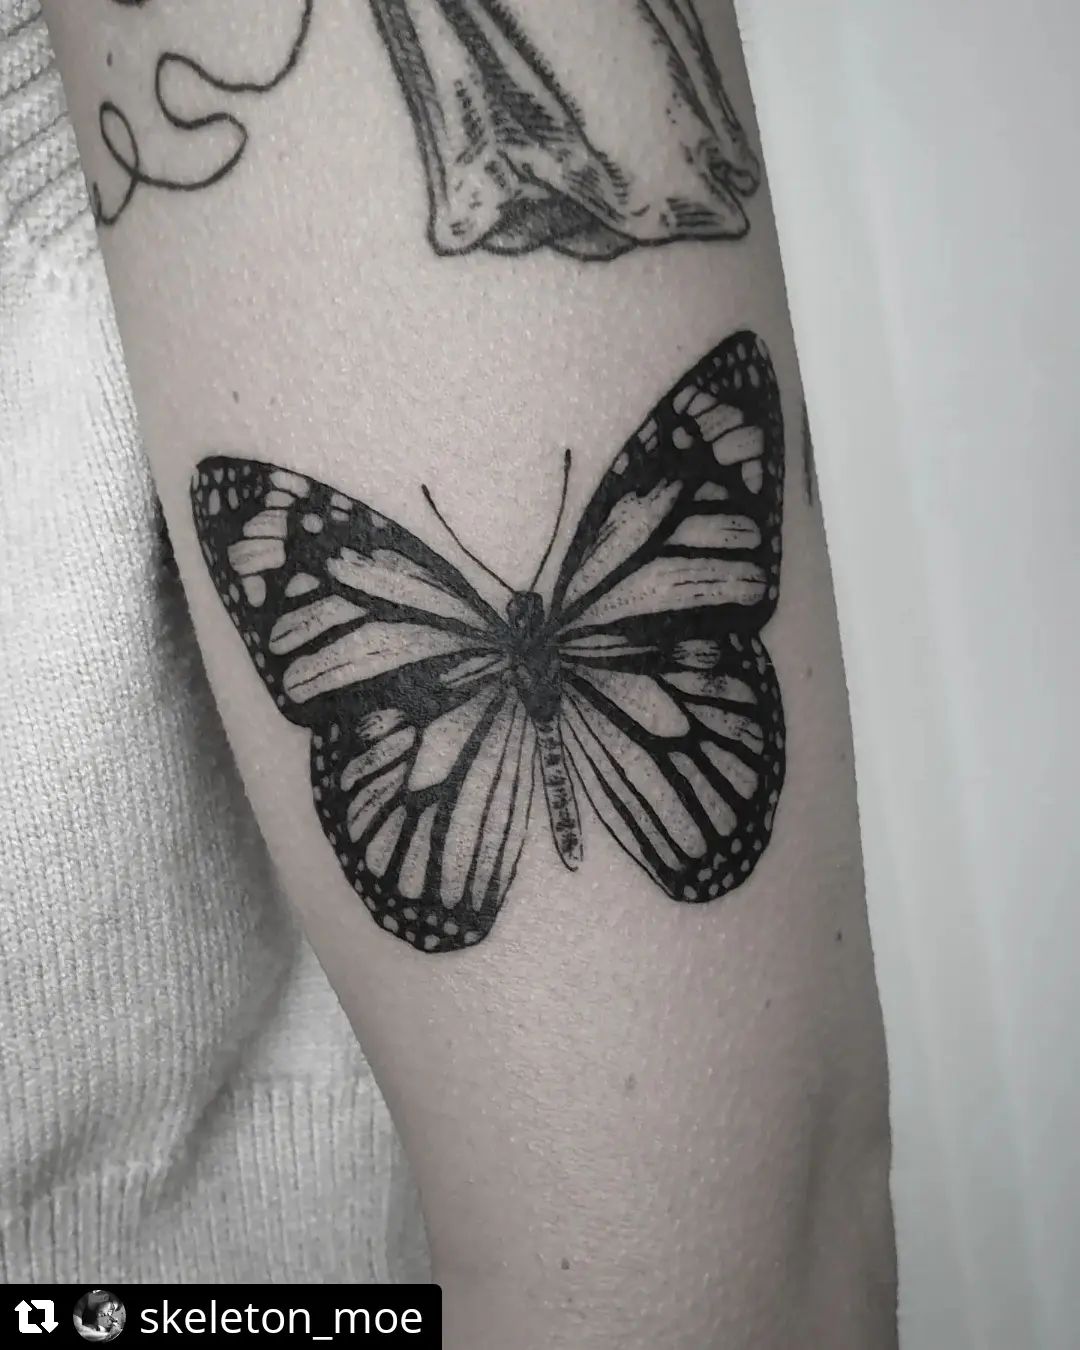 Schmetterling von @skeleton_moe
• • • • • •
zB to this cutie
.
#tattoo #tattoos